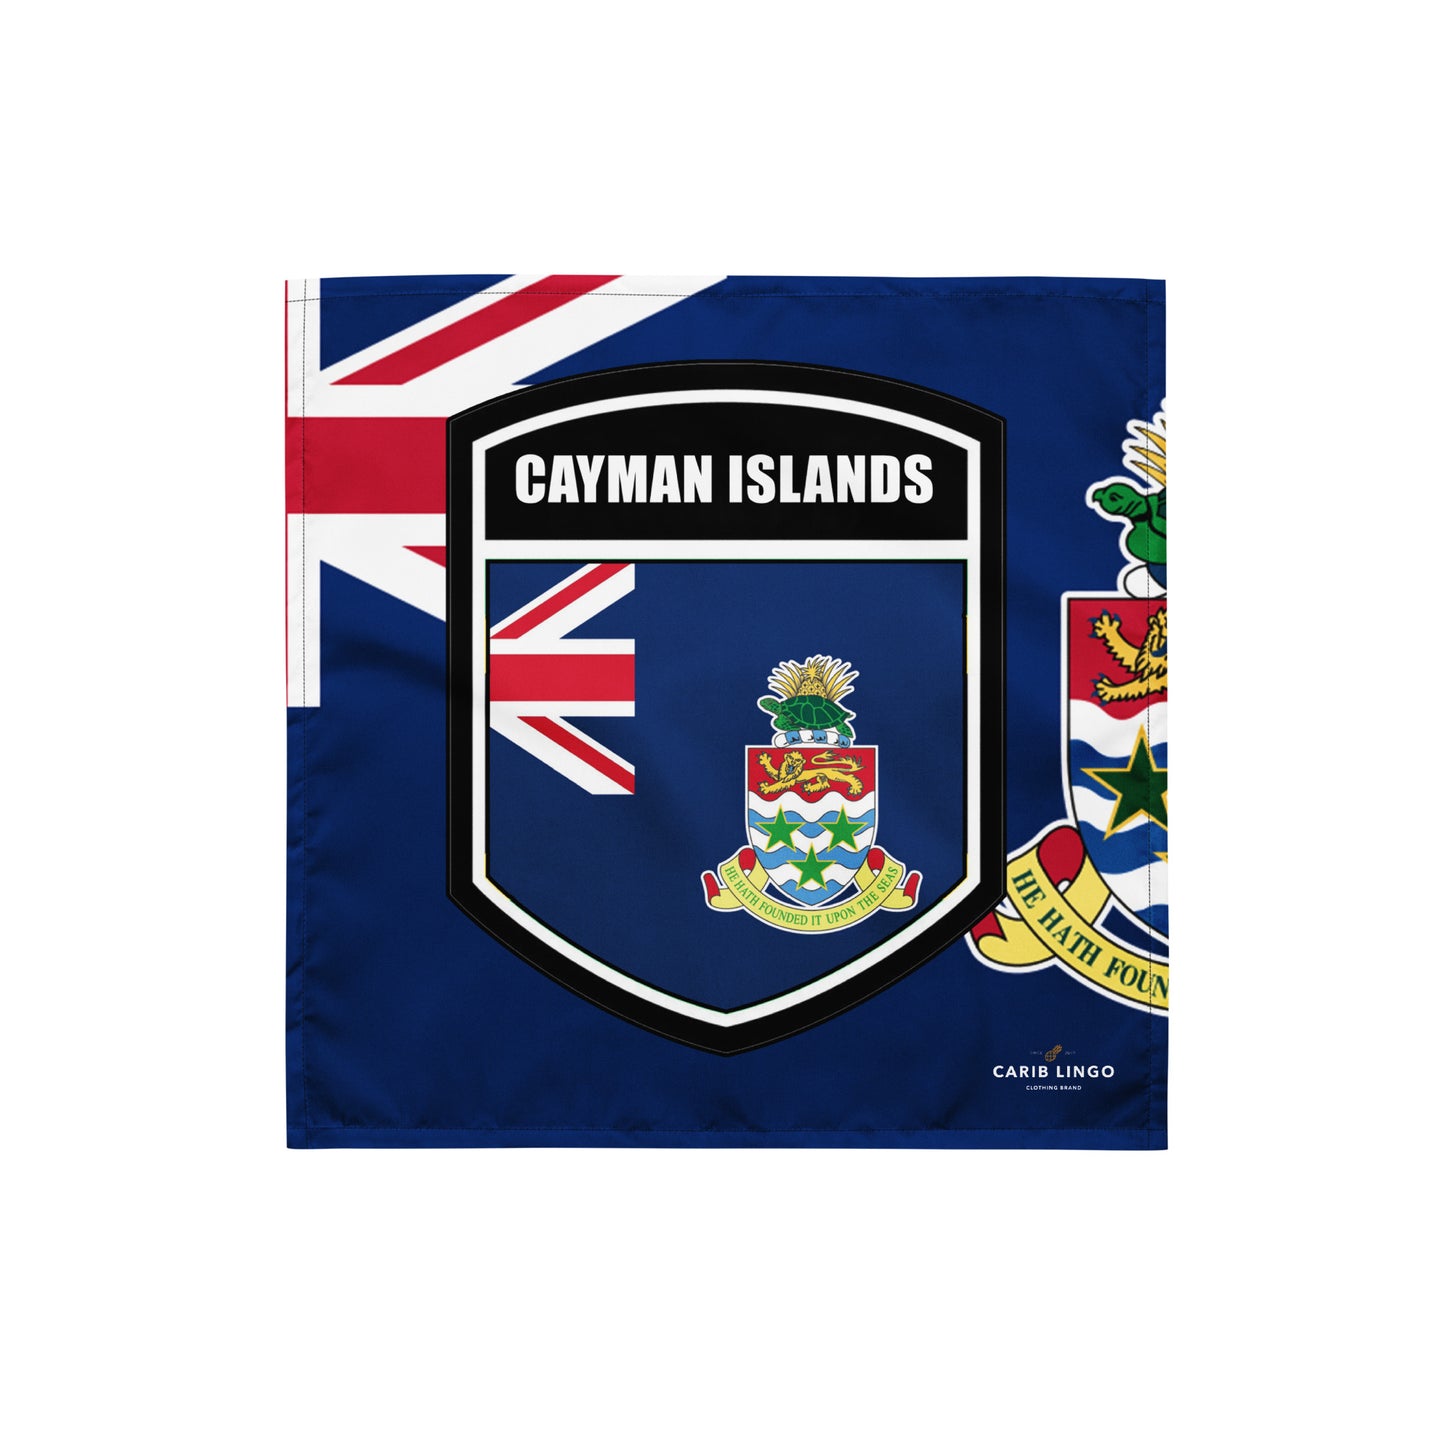 Cayman Islands bandana